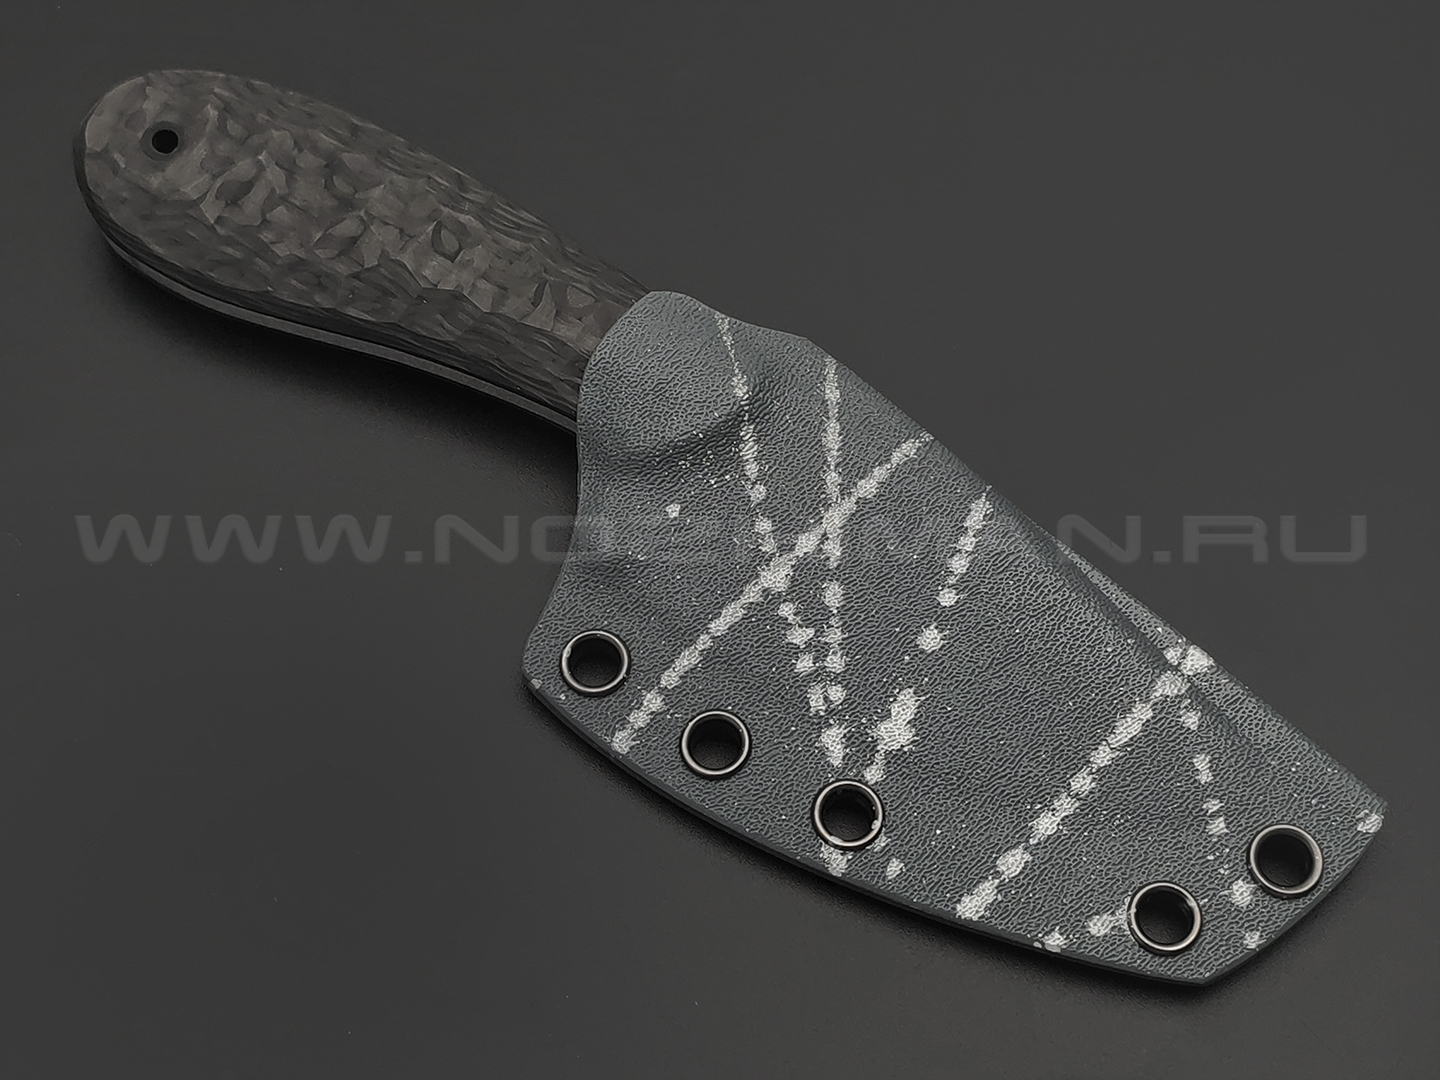 BRK нож Пирожок BX0223 сталь VG-10 satin, рукоять Carbon fiber